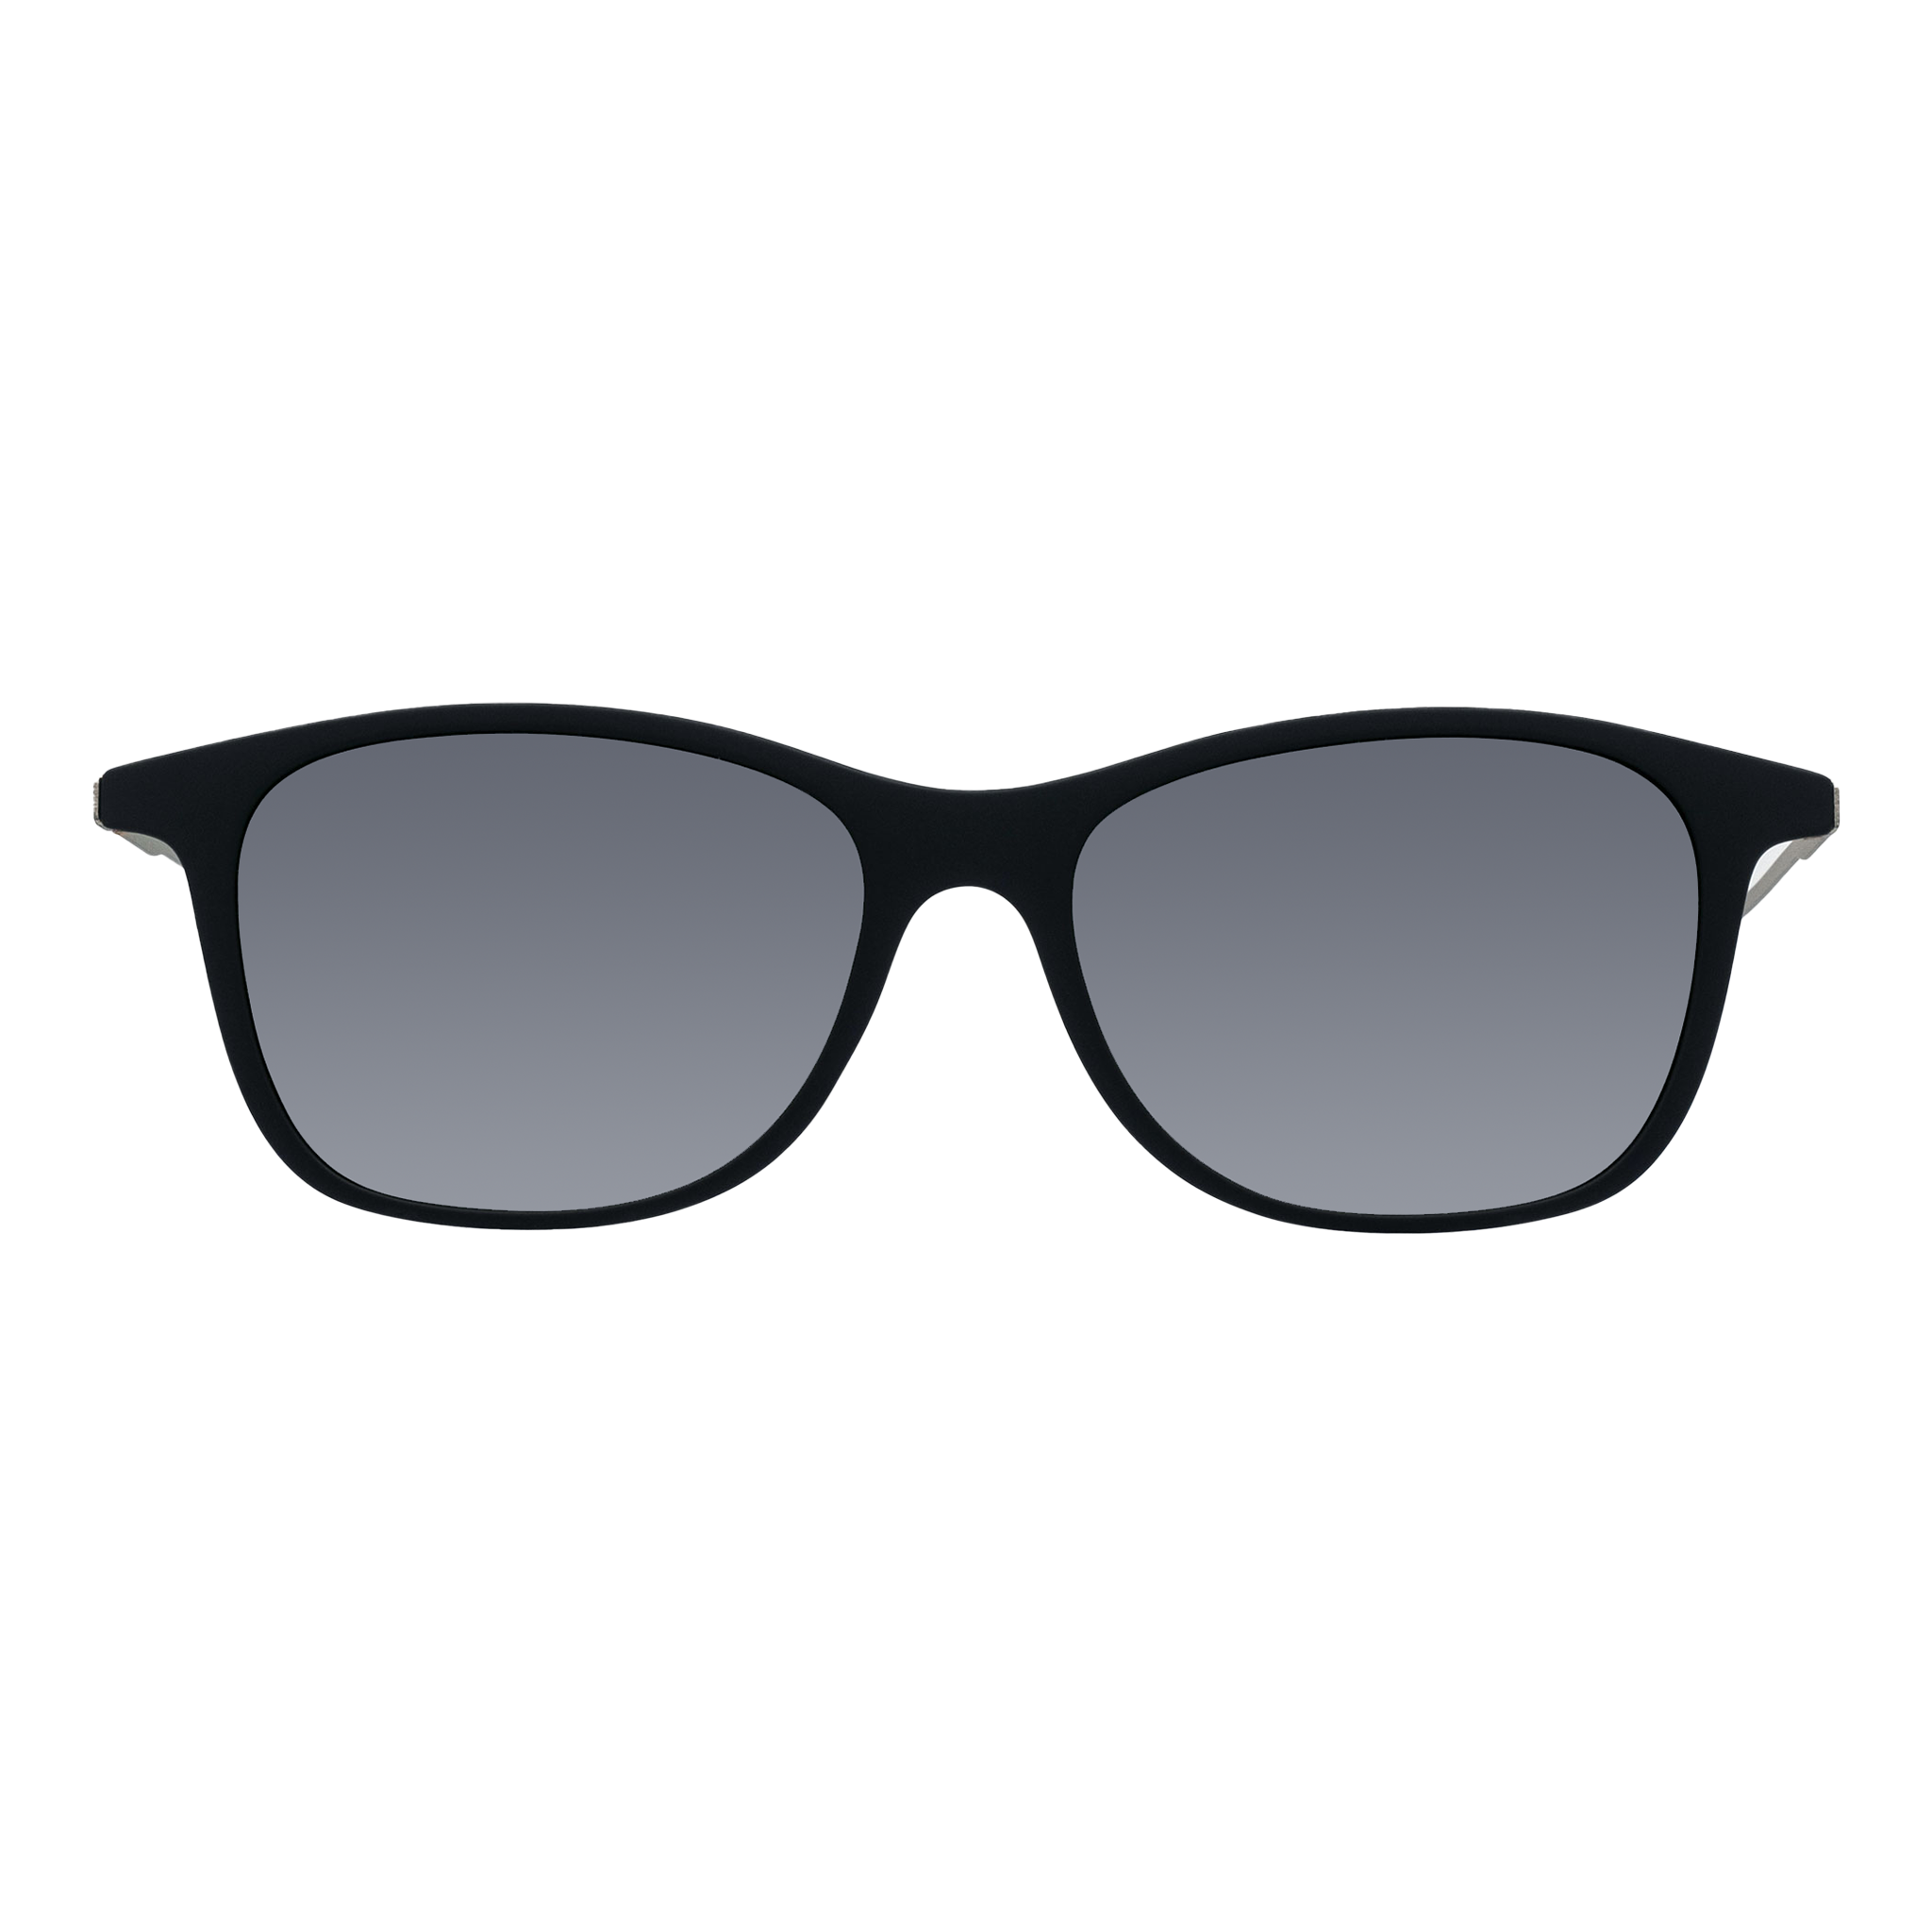 Buy ThinOPTICS Reading Glasses on Your Phone with White Universal Pod Case  on Amazon | PaisaWapas.com